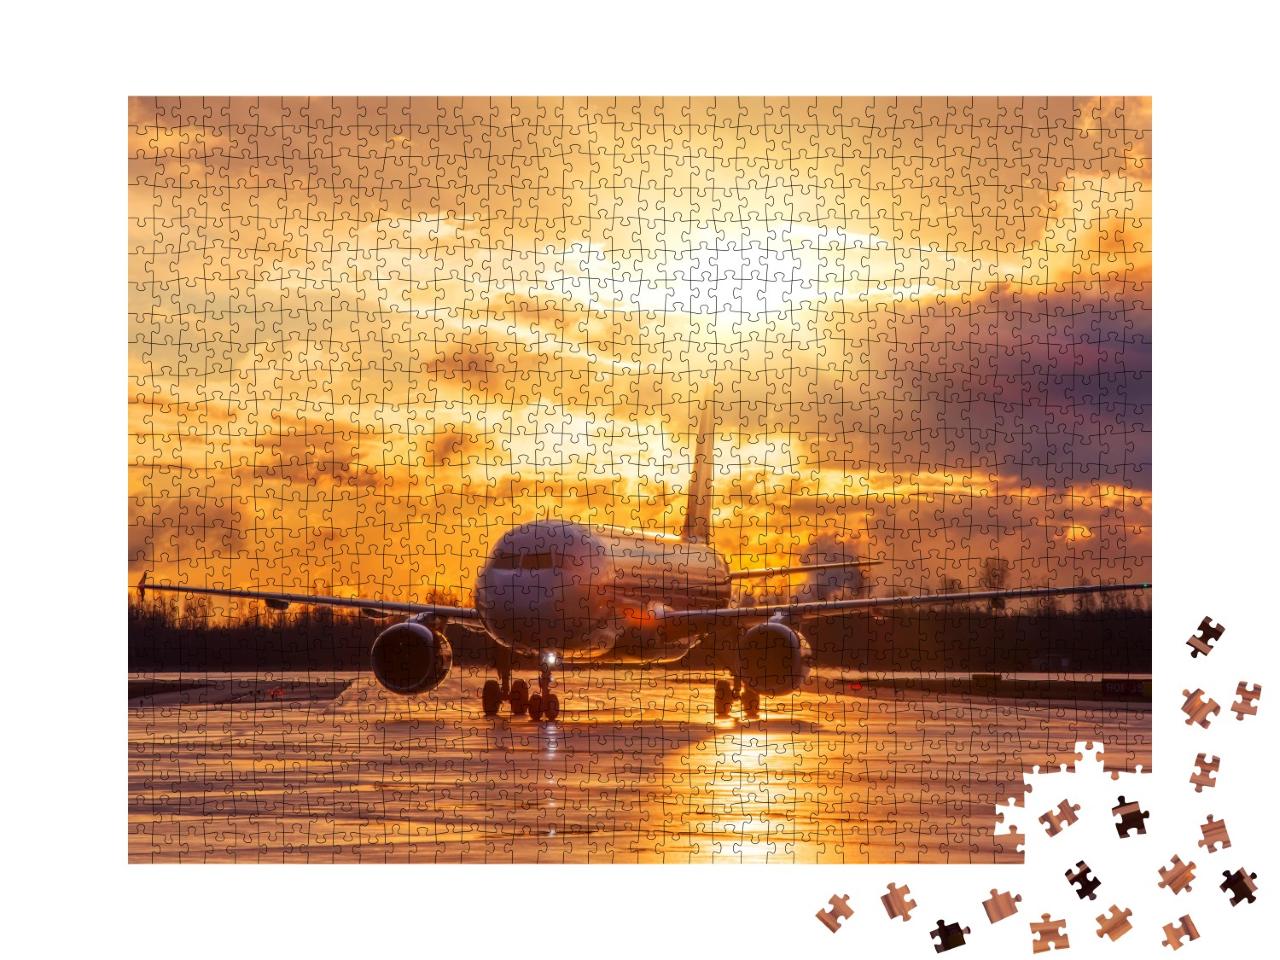 Puzzle 1000 Teile „Flugzeug auf der Landebahn im glühenden Sonnenuntergang“